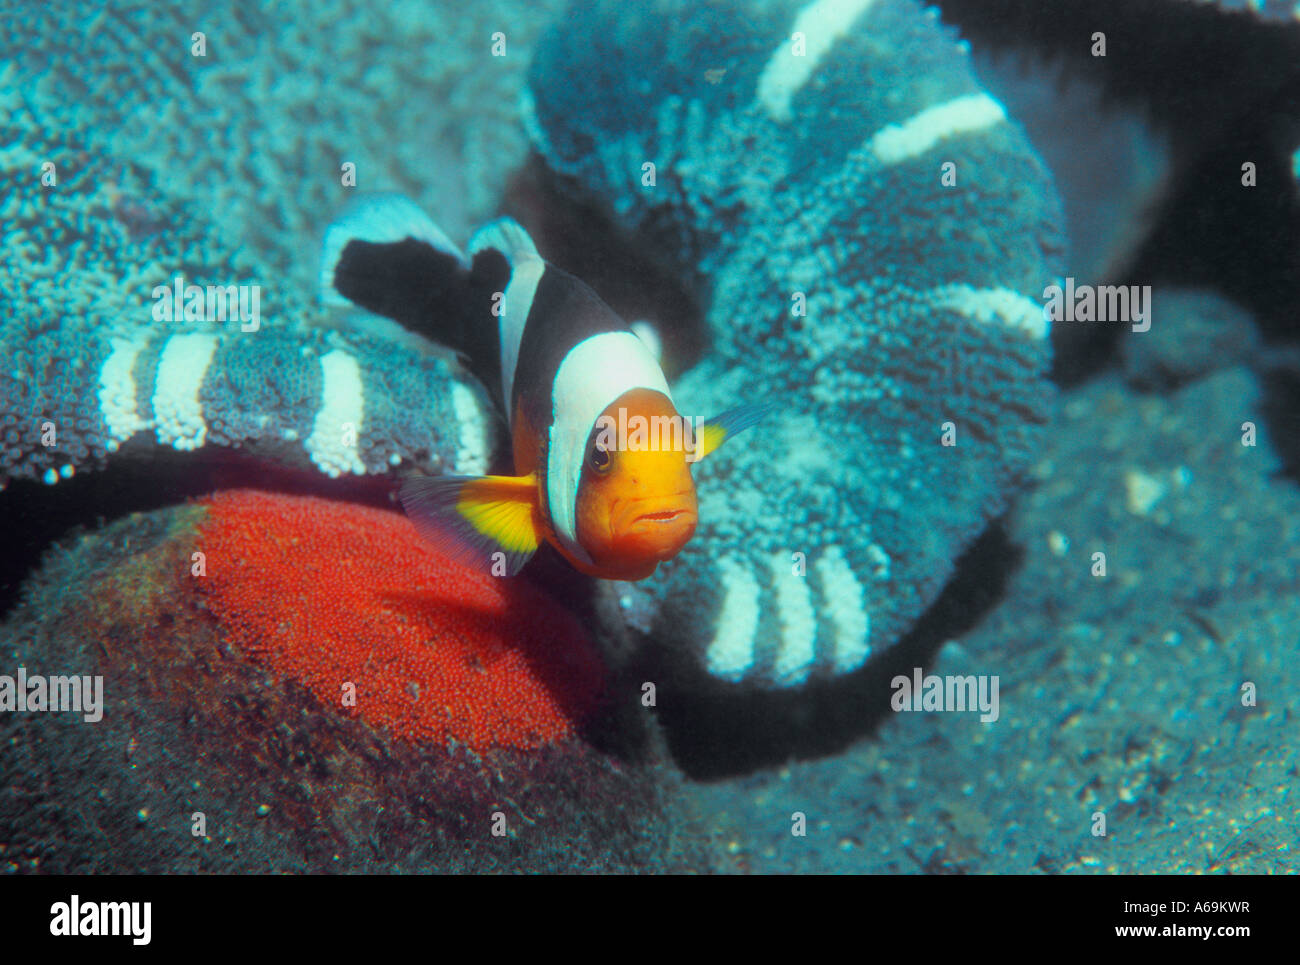 Saddleback anemonefish guarding freshy laid eggs on rock Stock Photo